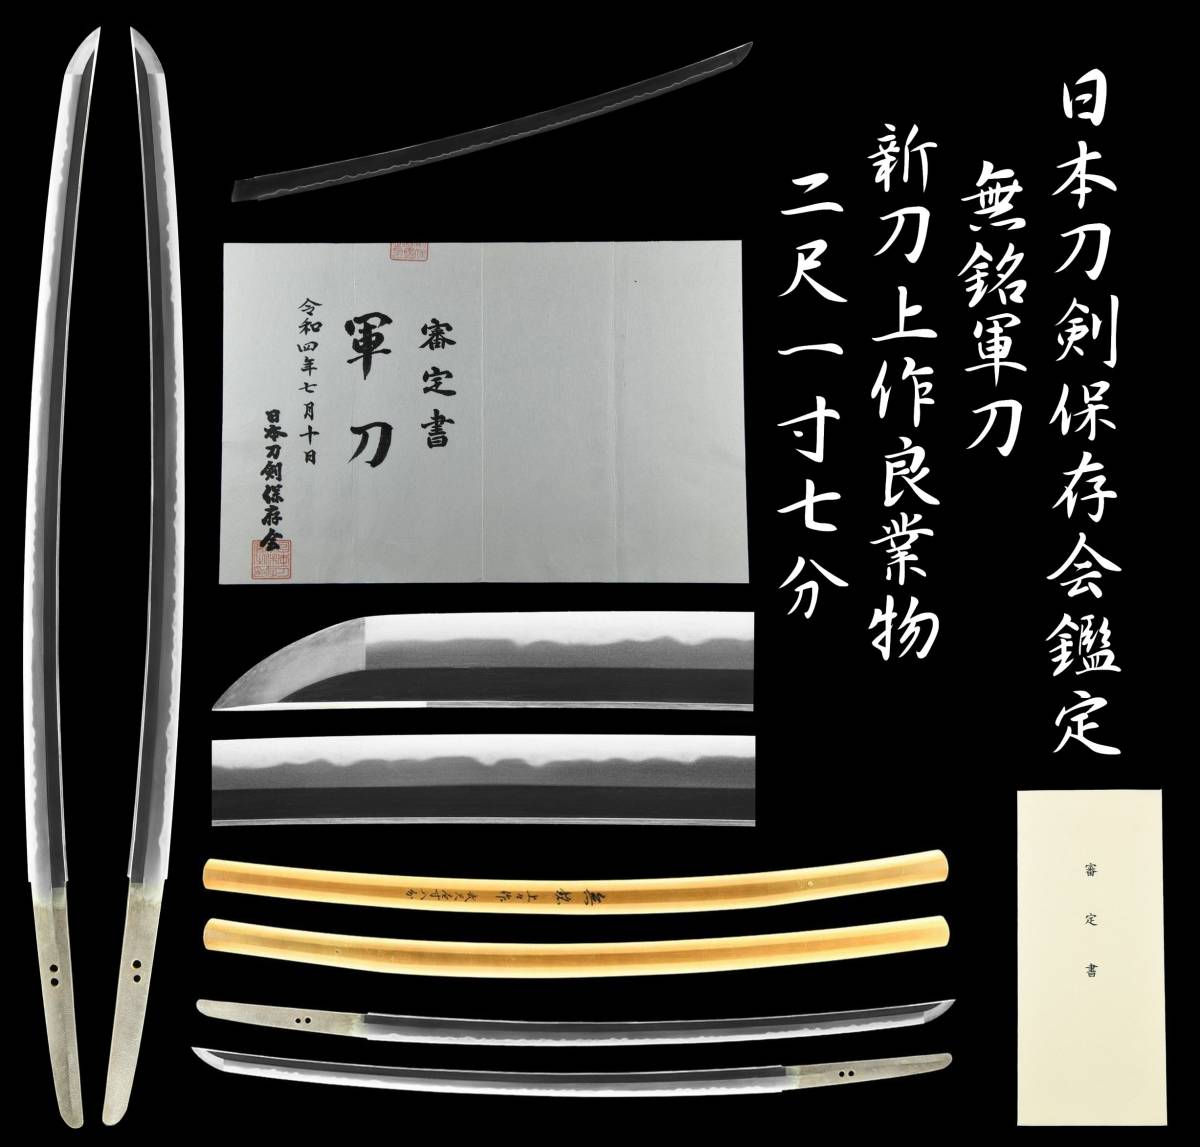 【勇】日本刀剣保存会査定 上々作 無銘軍刀 上々作良業物 二尺一寸七分 刀 日本刀